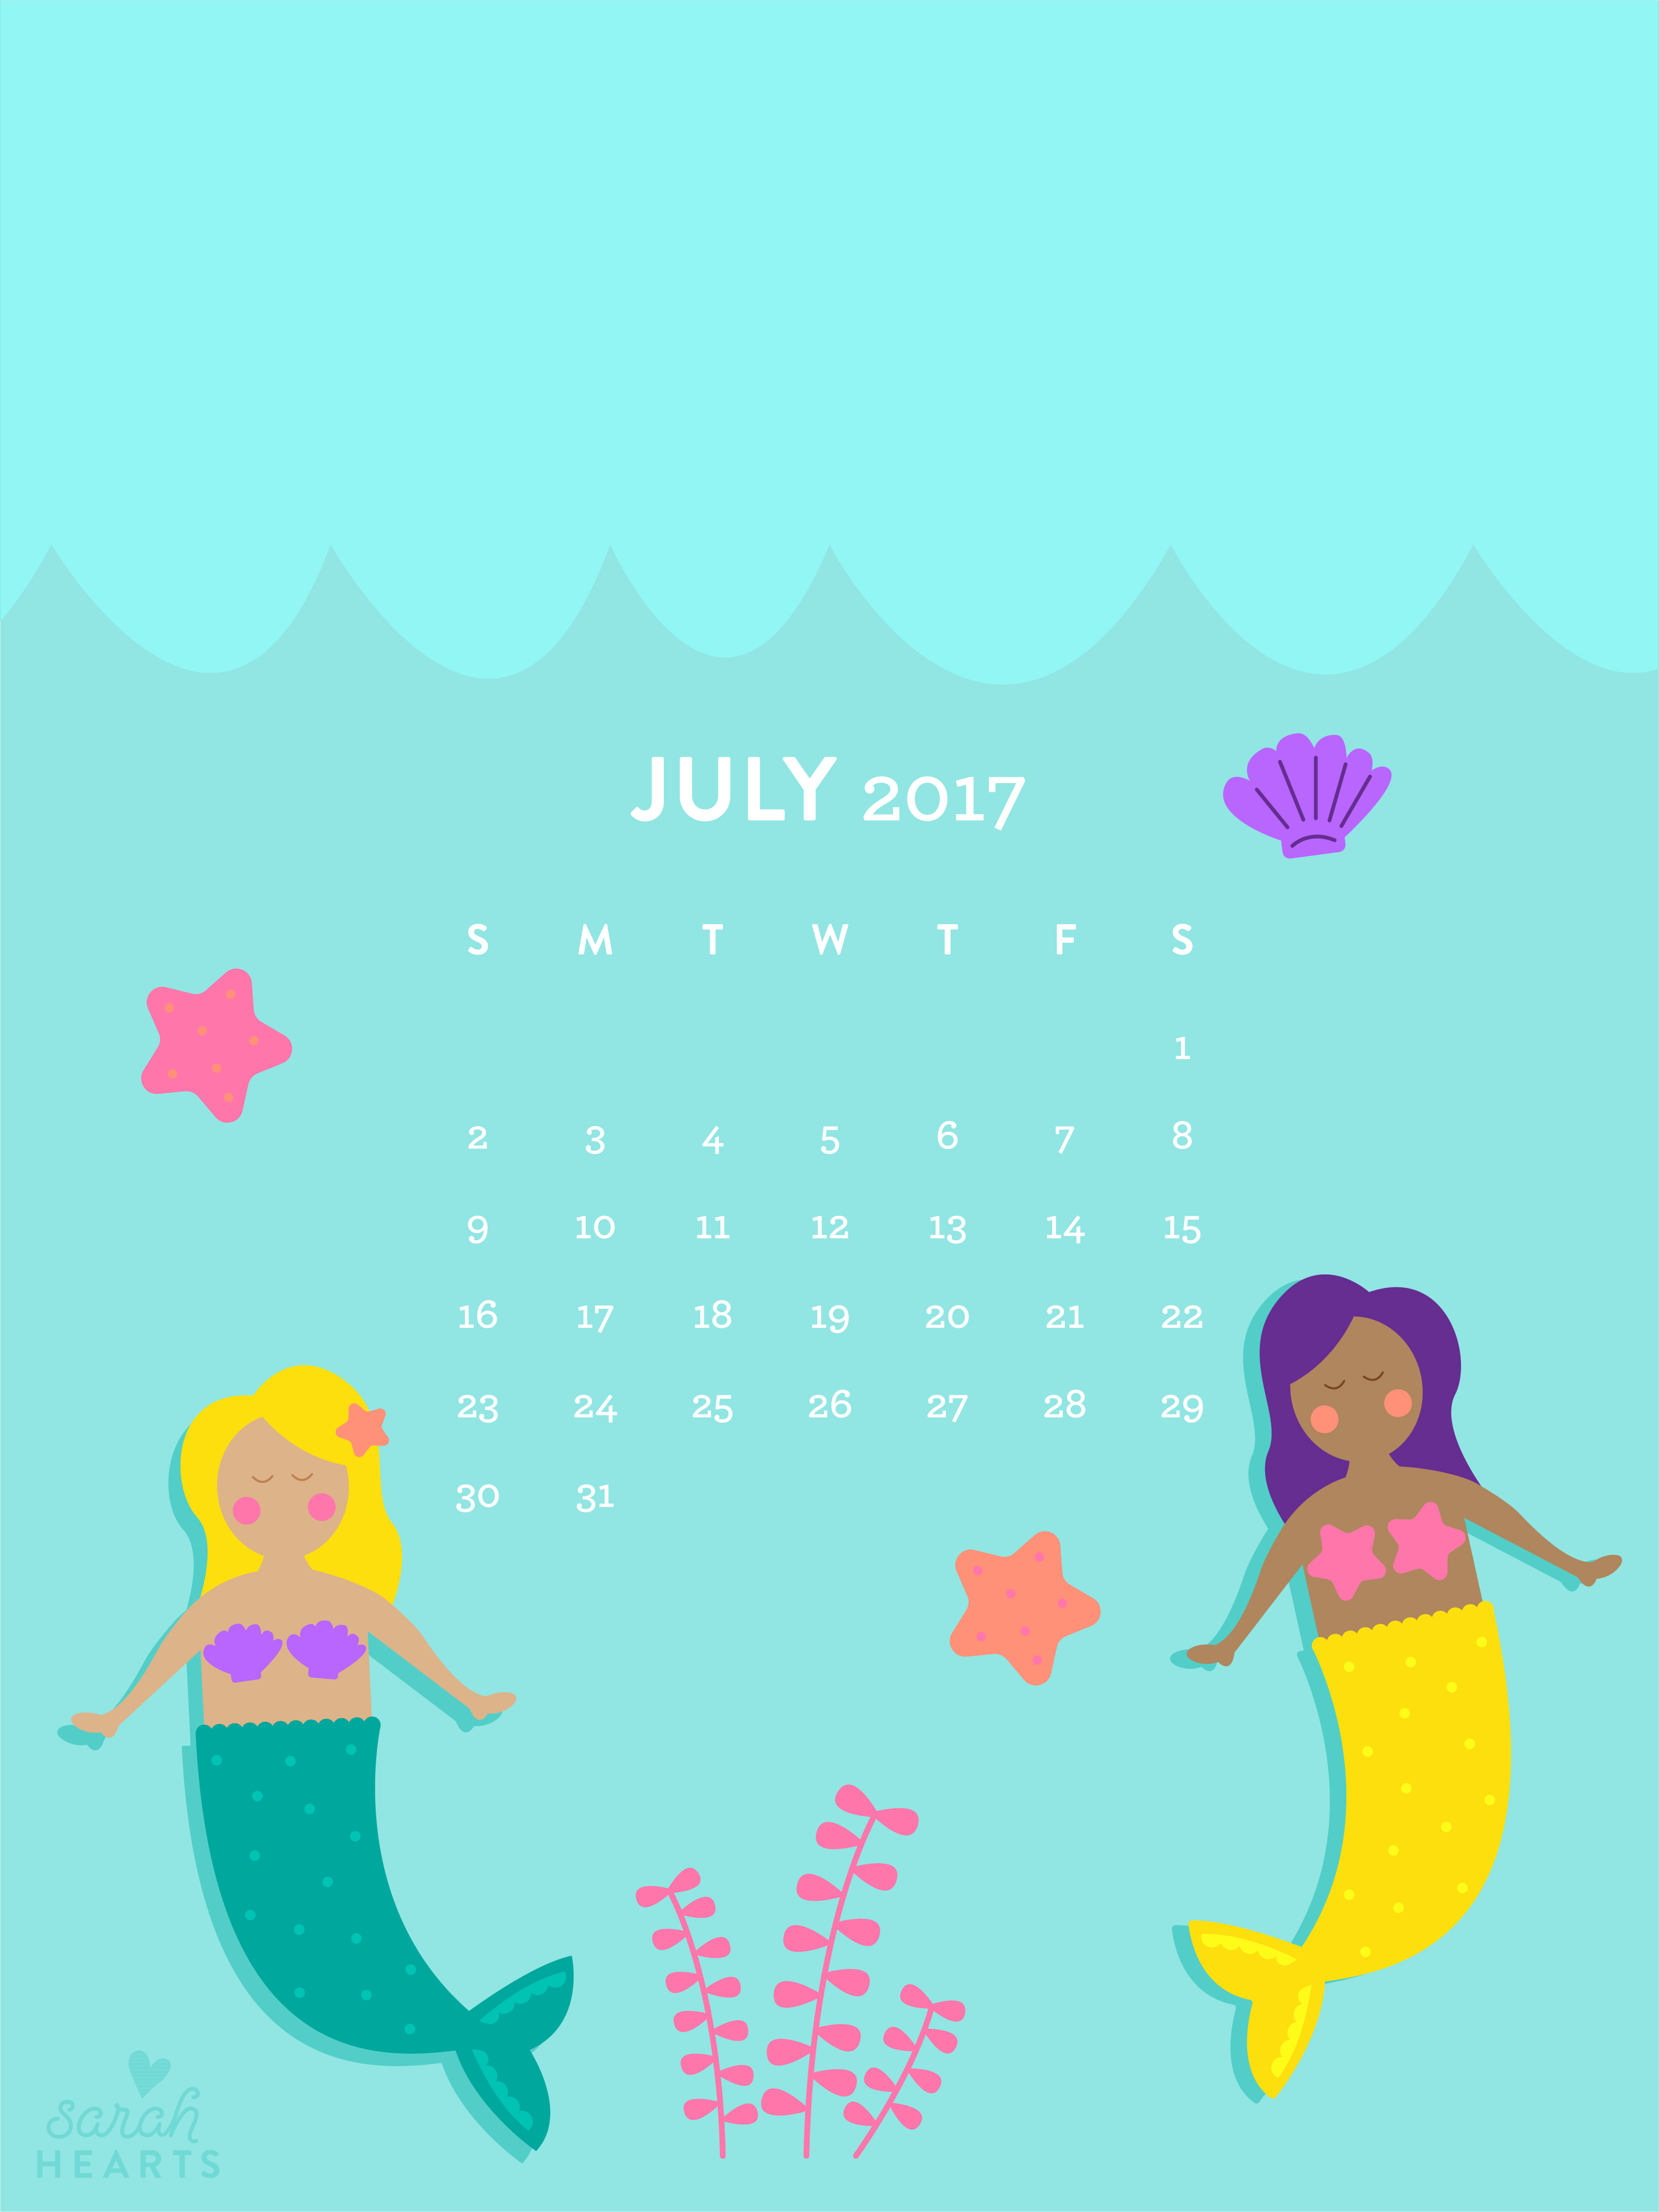 June 2022 Popsicle Calendar Wallpaper  Sarah Hearts  Calendar wallpaper  Screen savers wallpapers Popsicles wallpaper